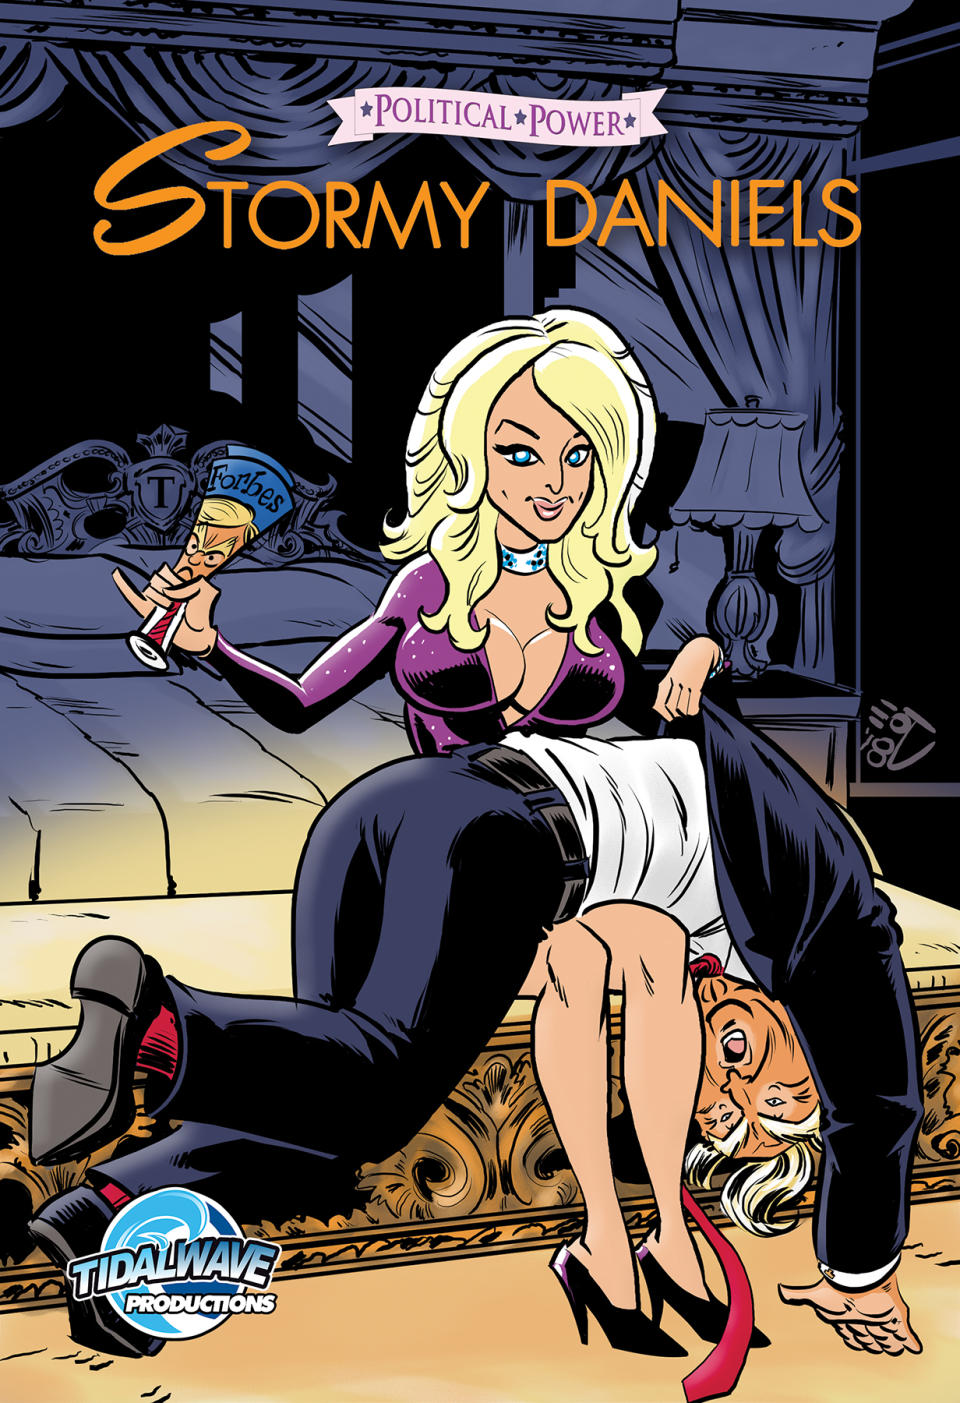 960px x 1403px - New comic shows Stormy Daniels spanking President Trump